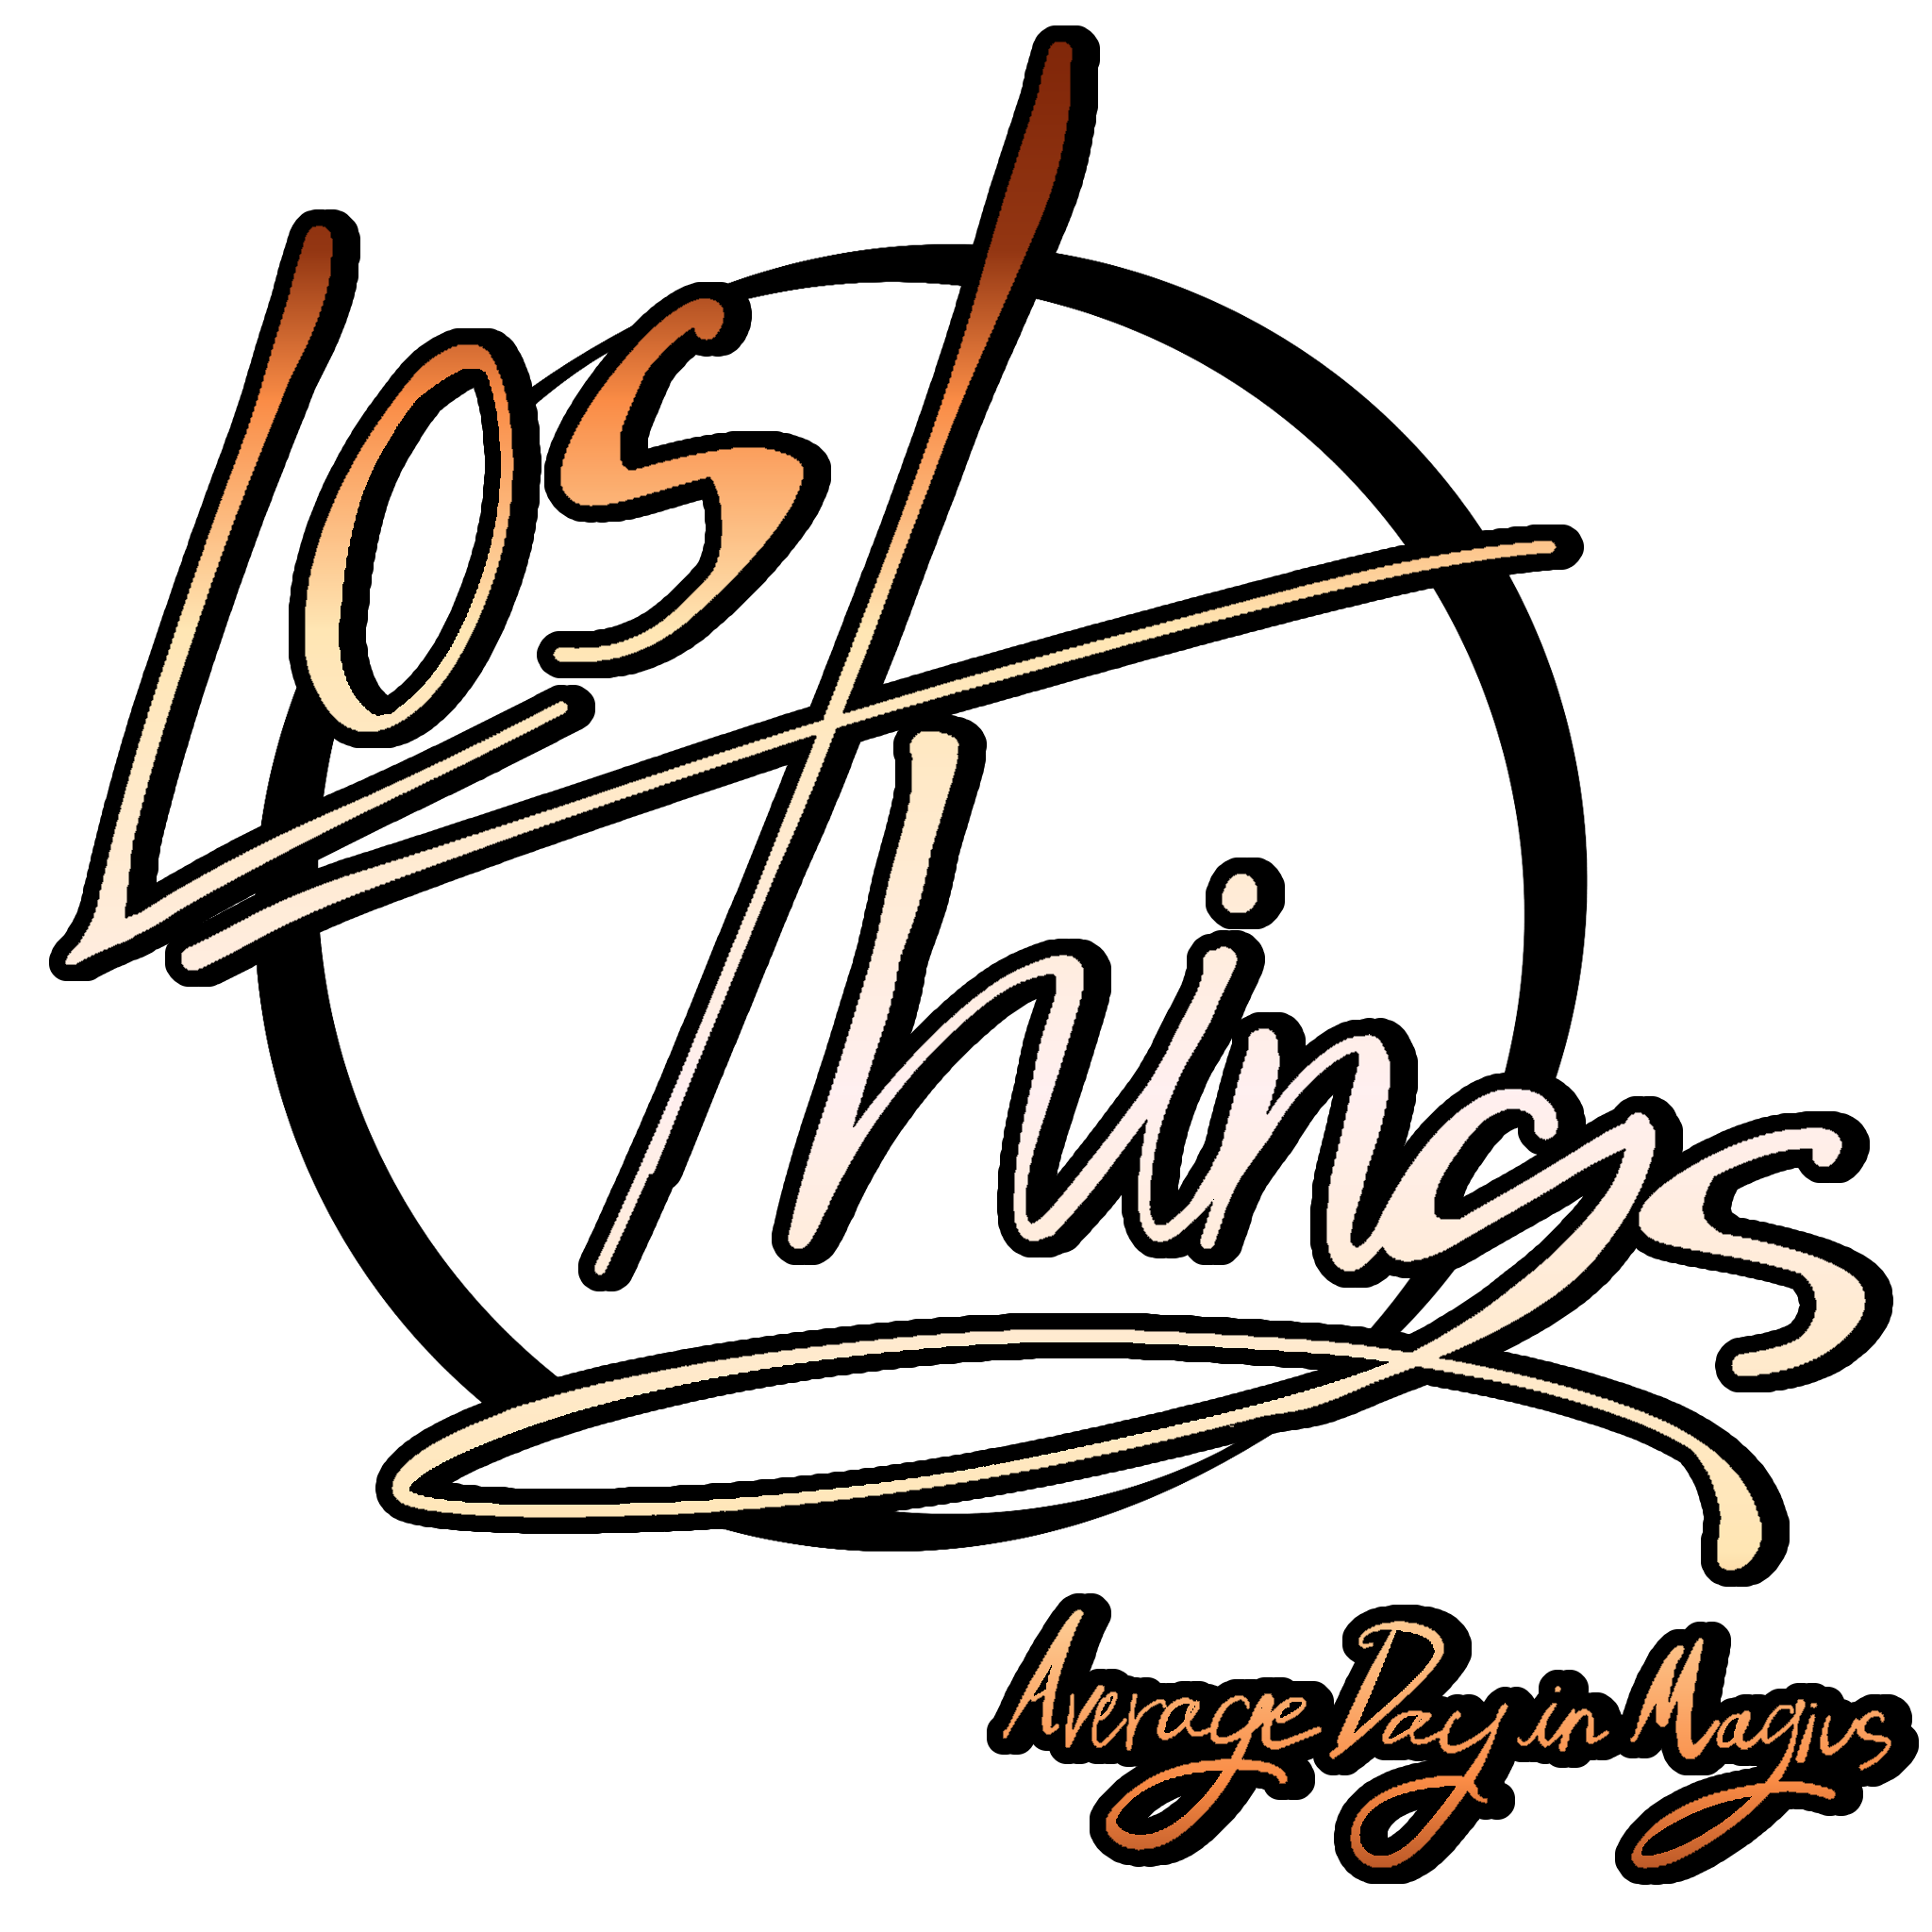 lost things logo